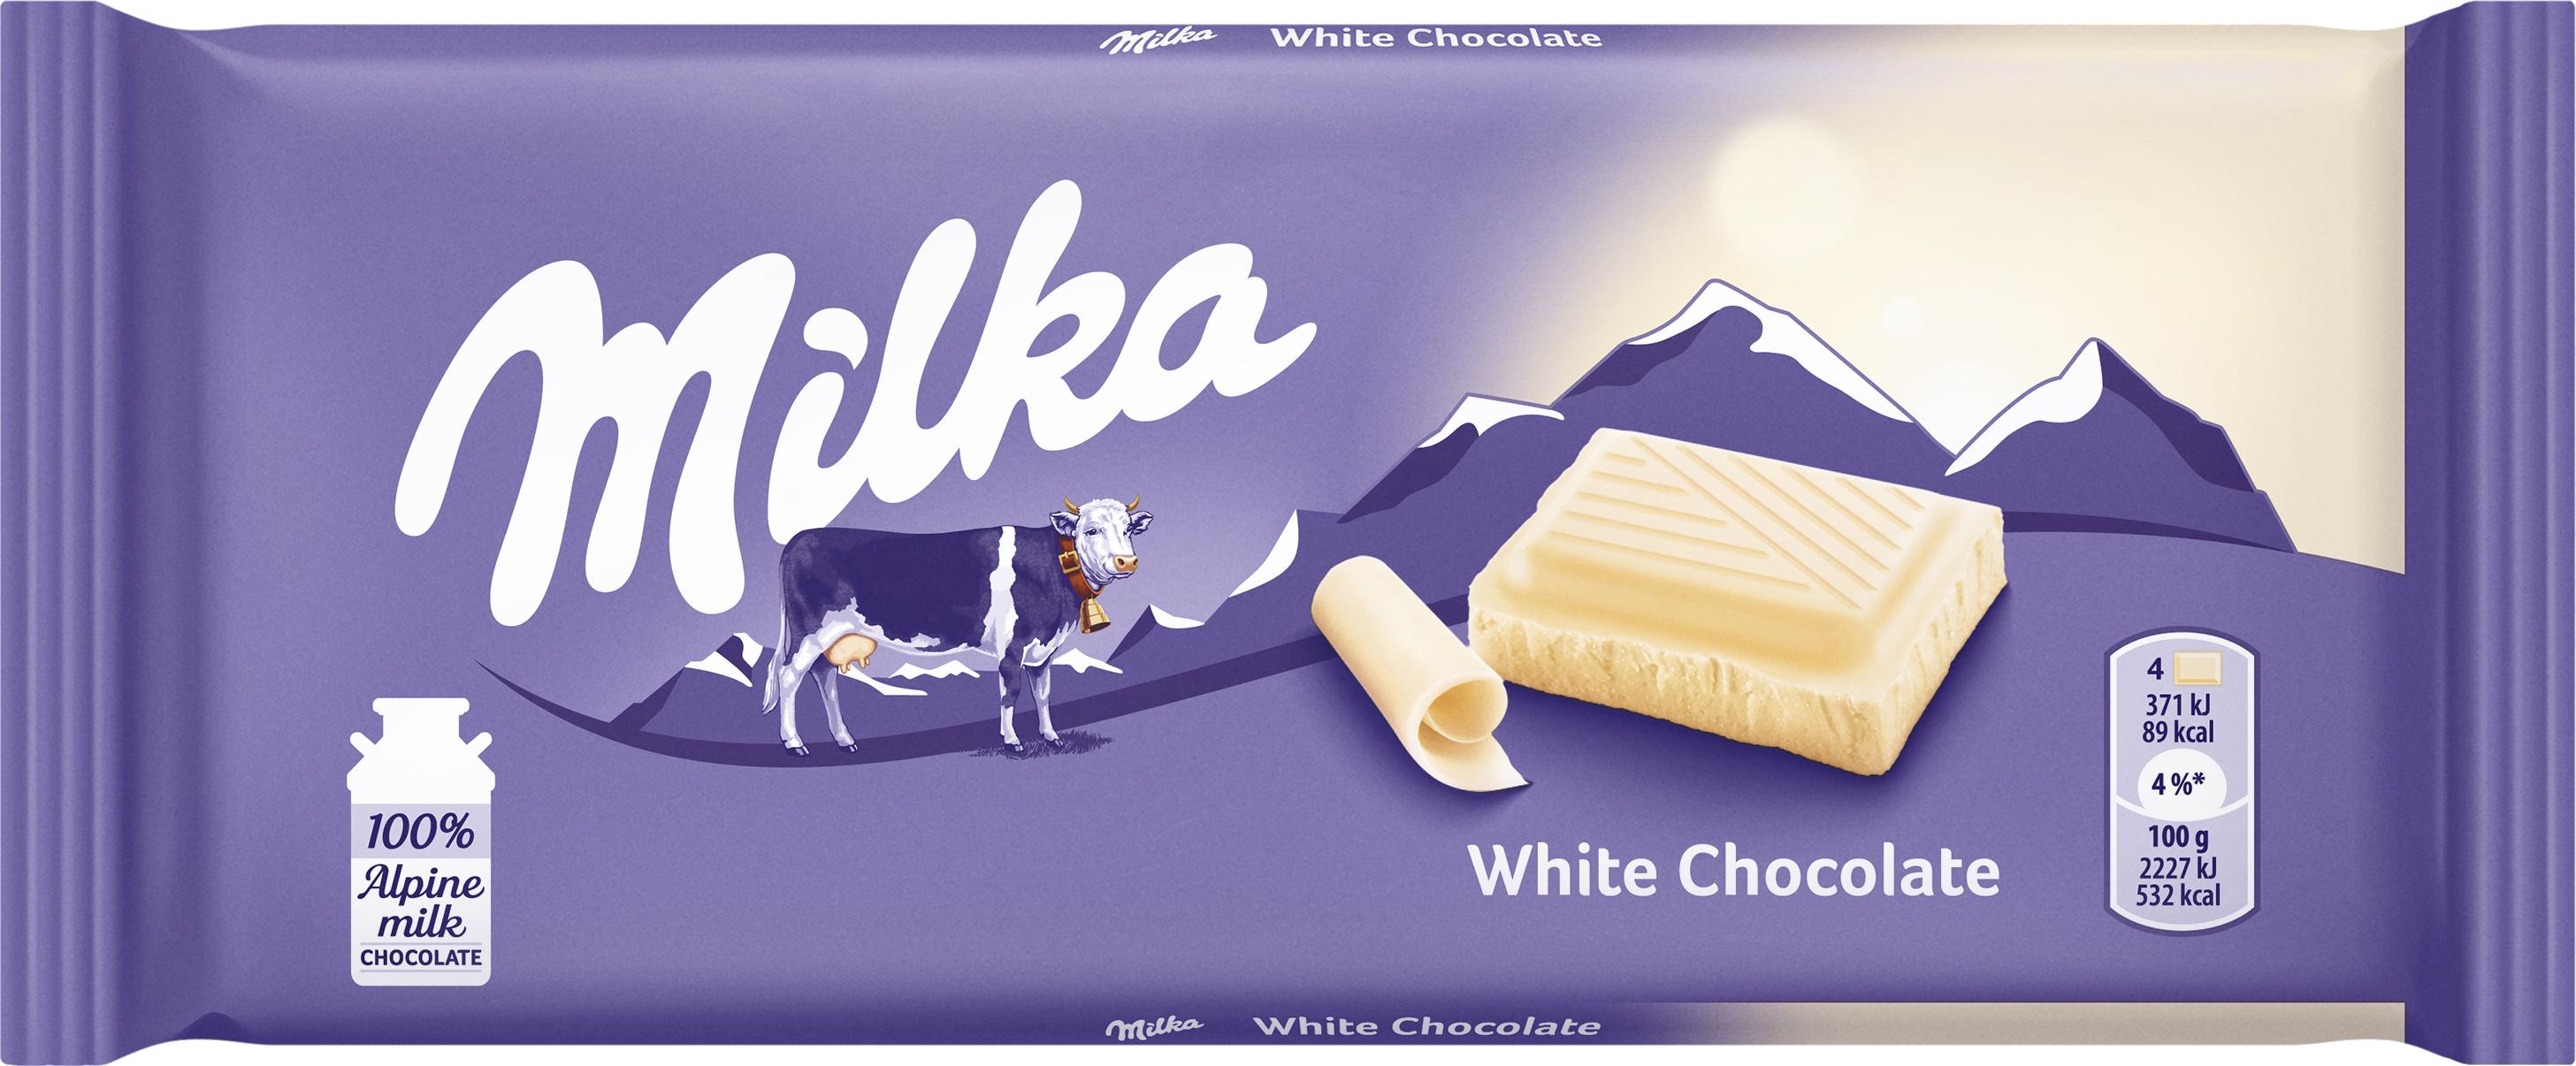 Slika za Čokolada Milka white 100g